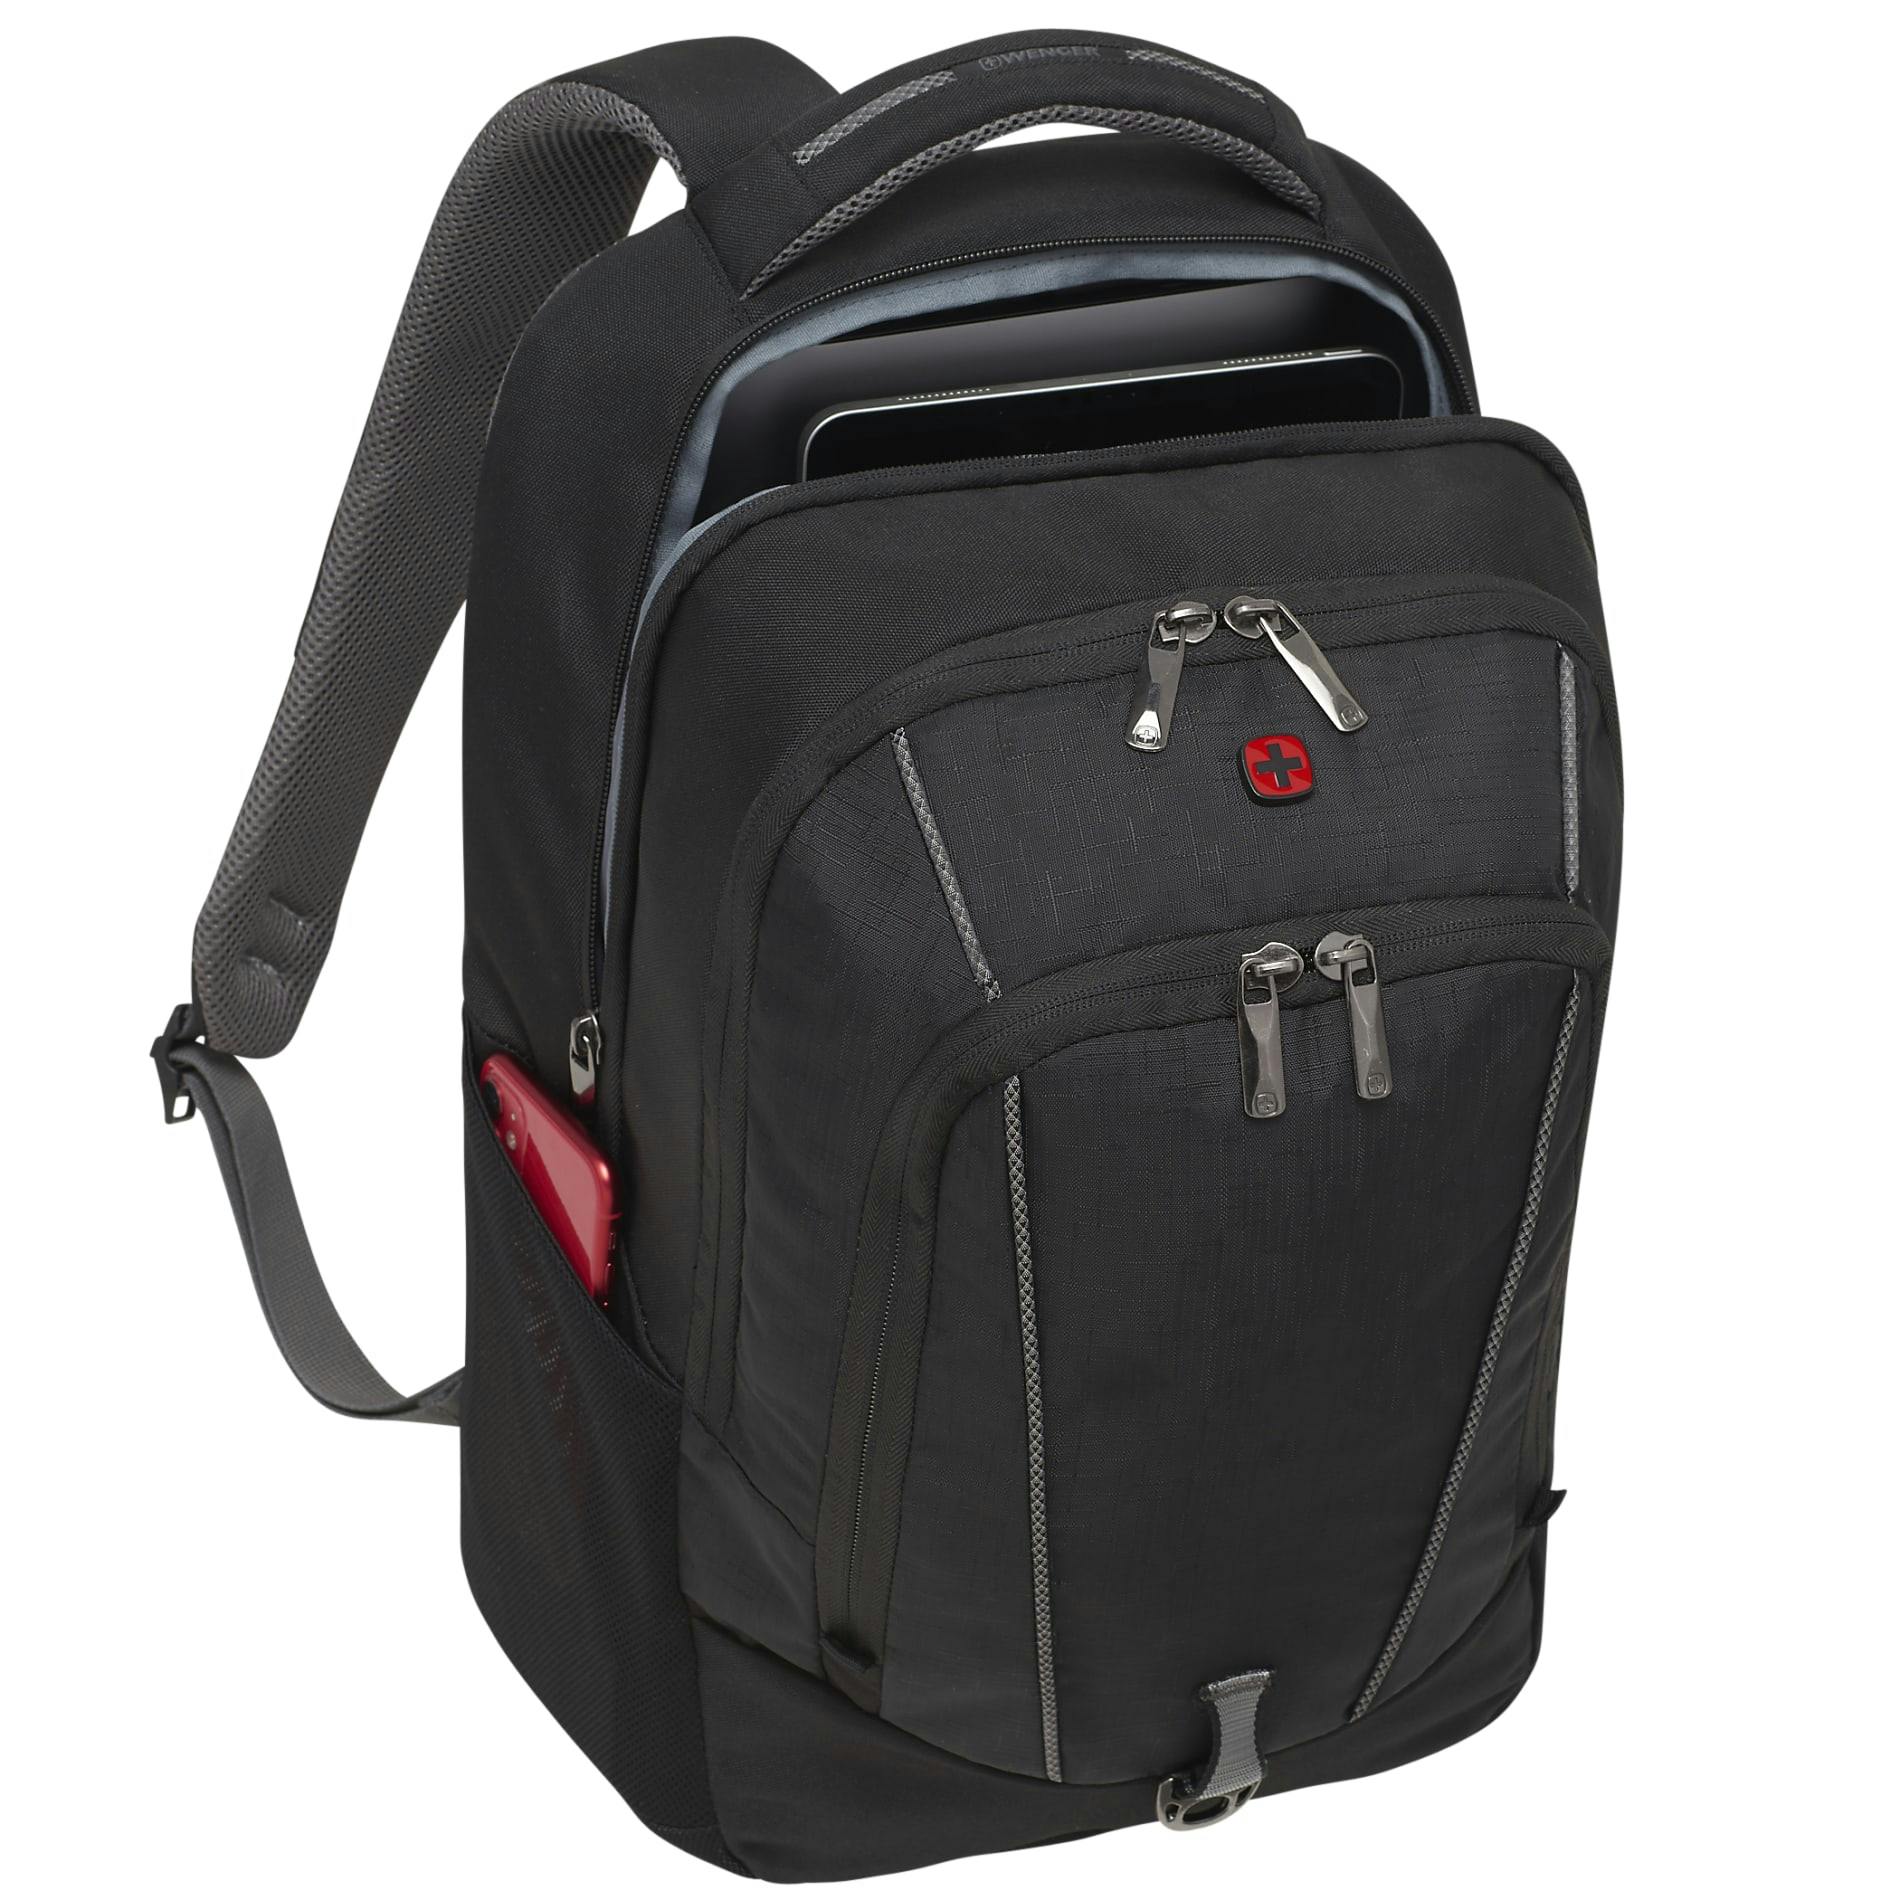 Wenger Pro II 17" Computer Backpack - additional Image 6